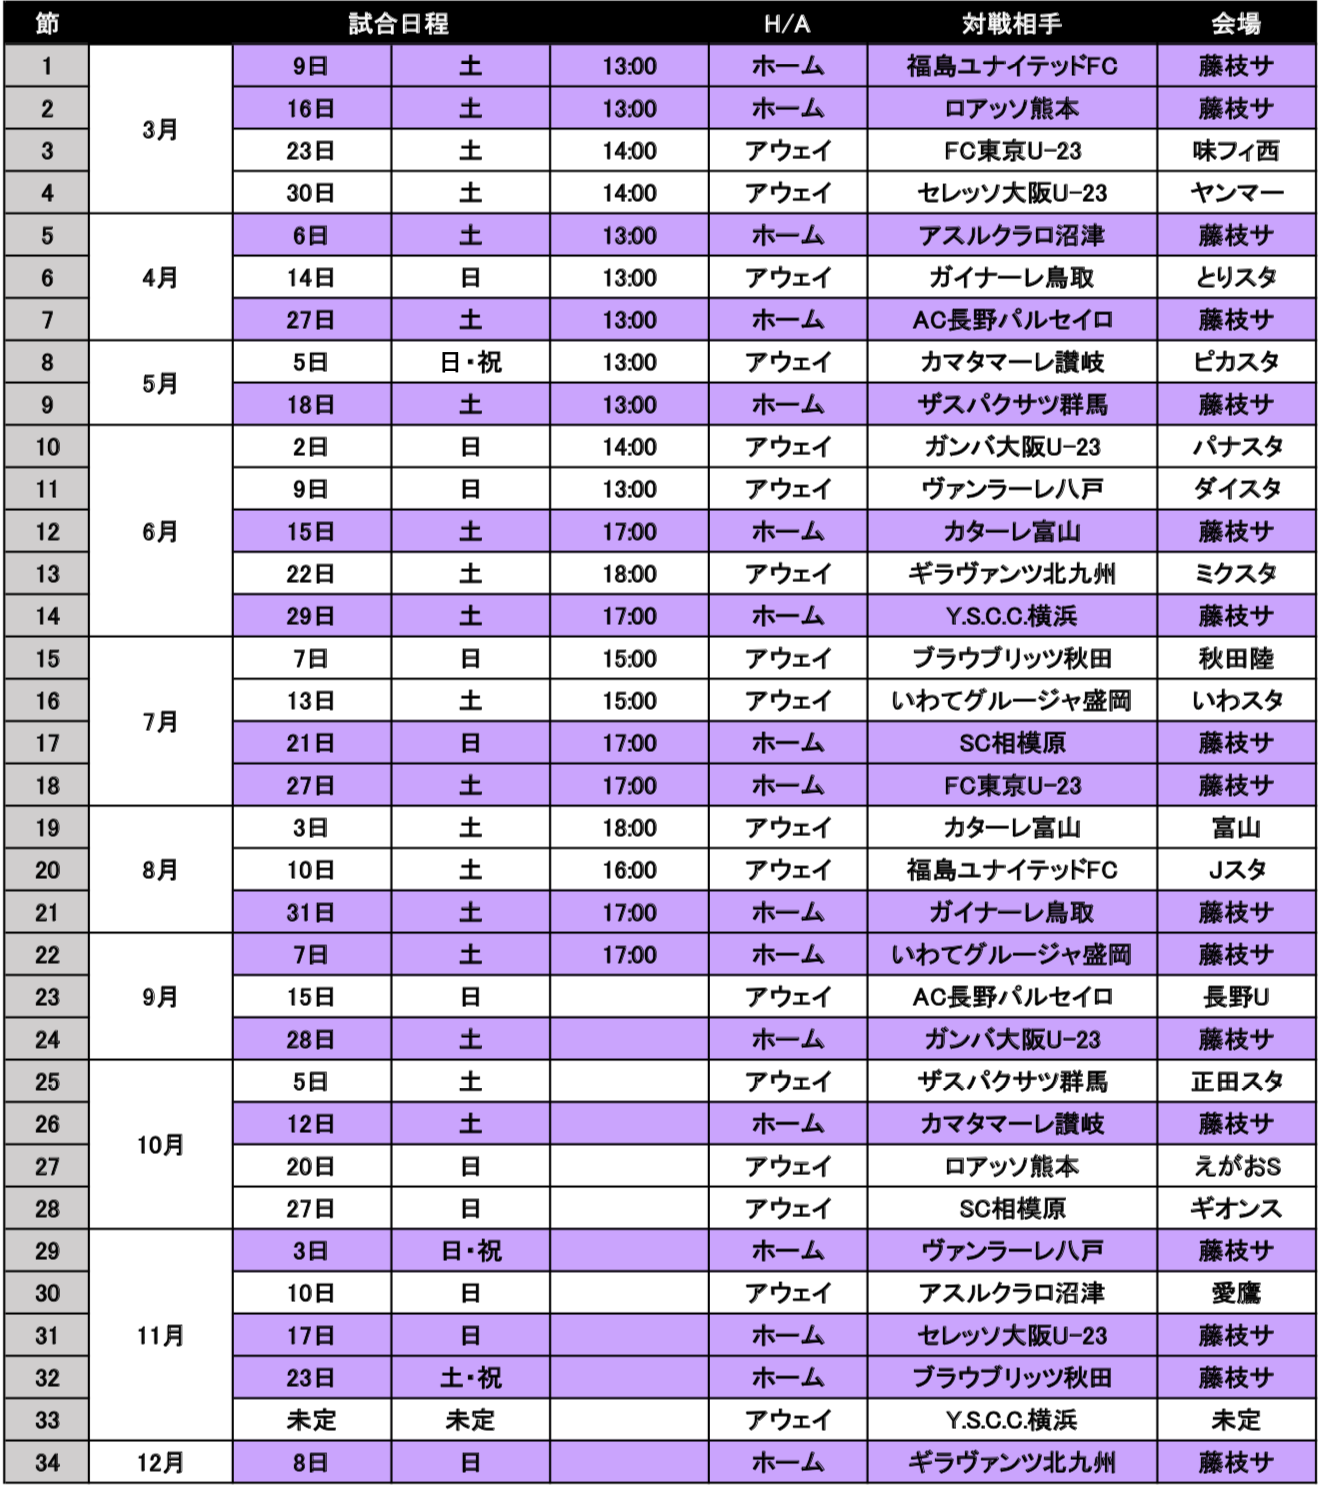 19明治安田生命j3リーグ 試合日程決定のお知らせ 藤枝myfc